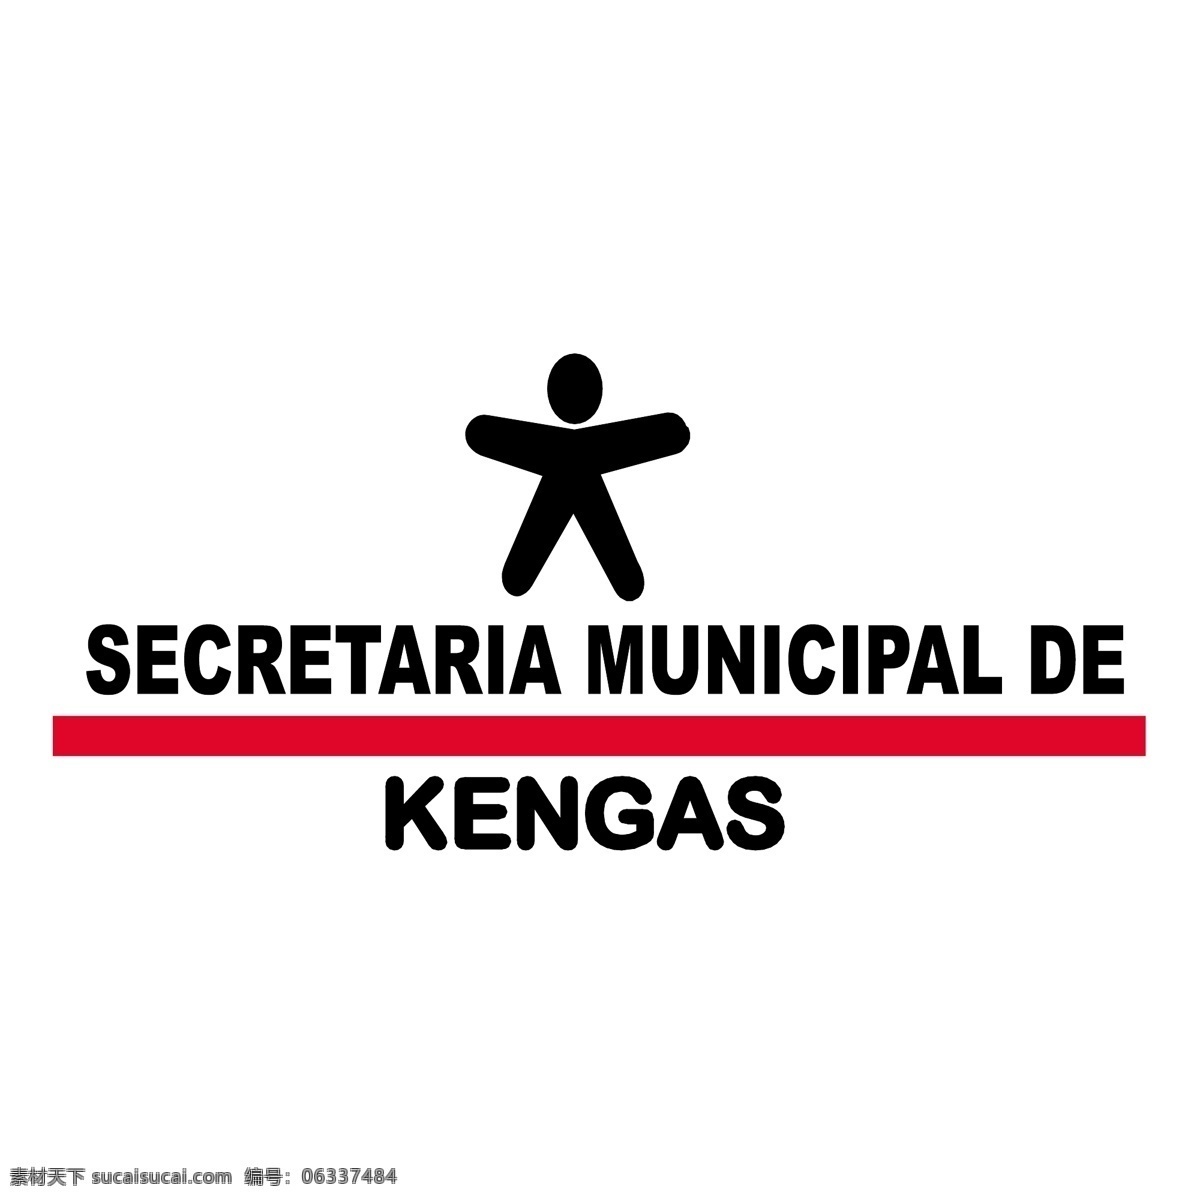 市政 kengas 秘书 标志 市 德 自由 psd源文件 logo设计